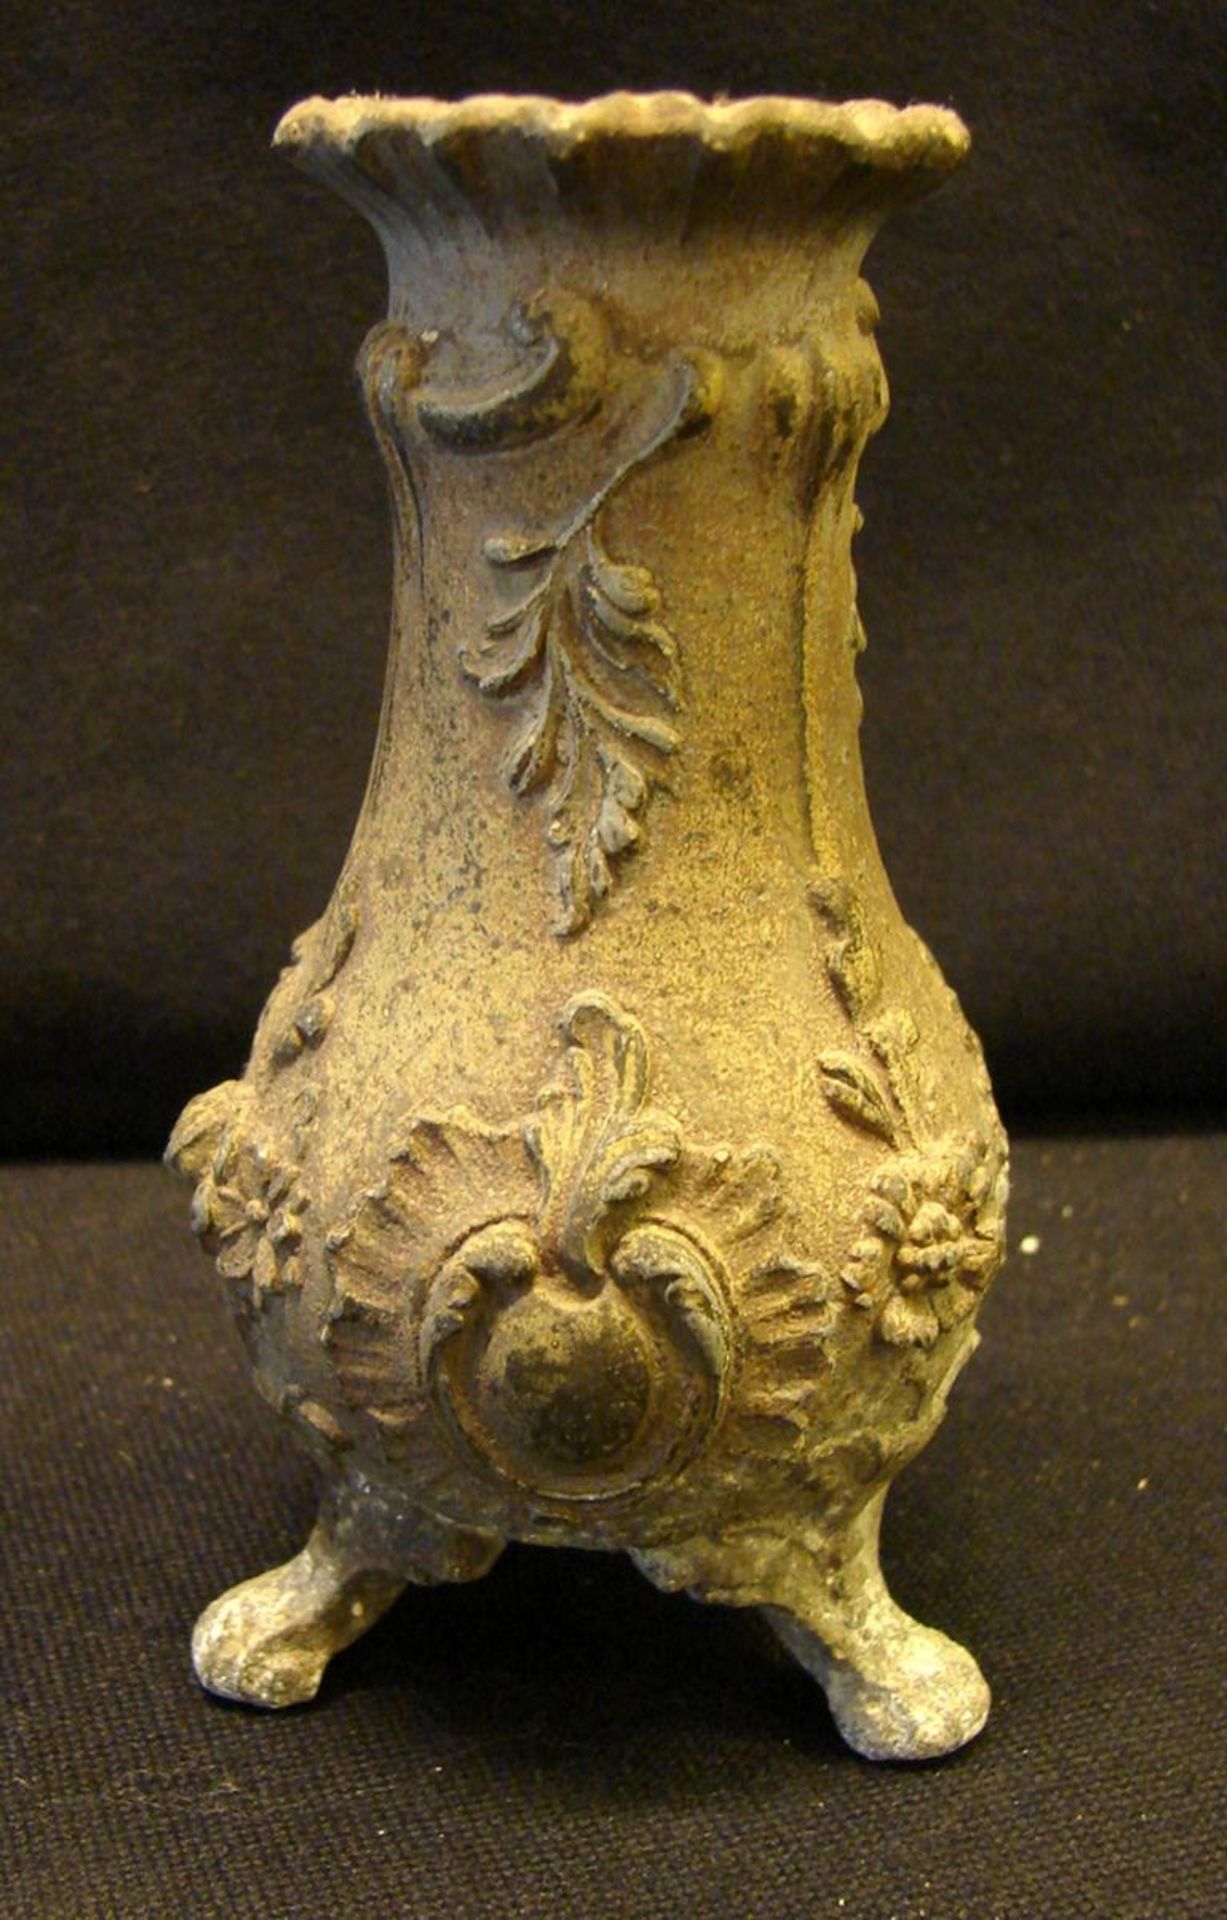 Vase, Metall?, mit Ornamenten, H.ca. 12 cm (leicht beschädigt)- - -22.00 % buyer's premium on the